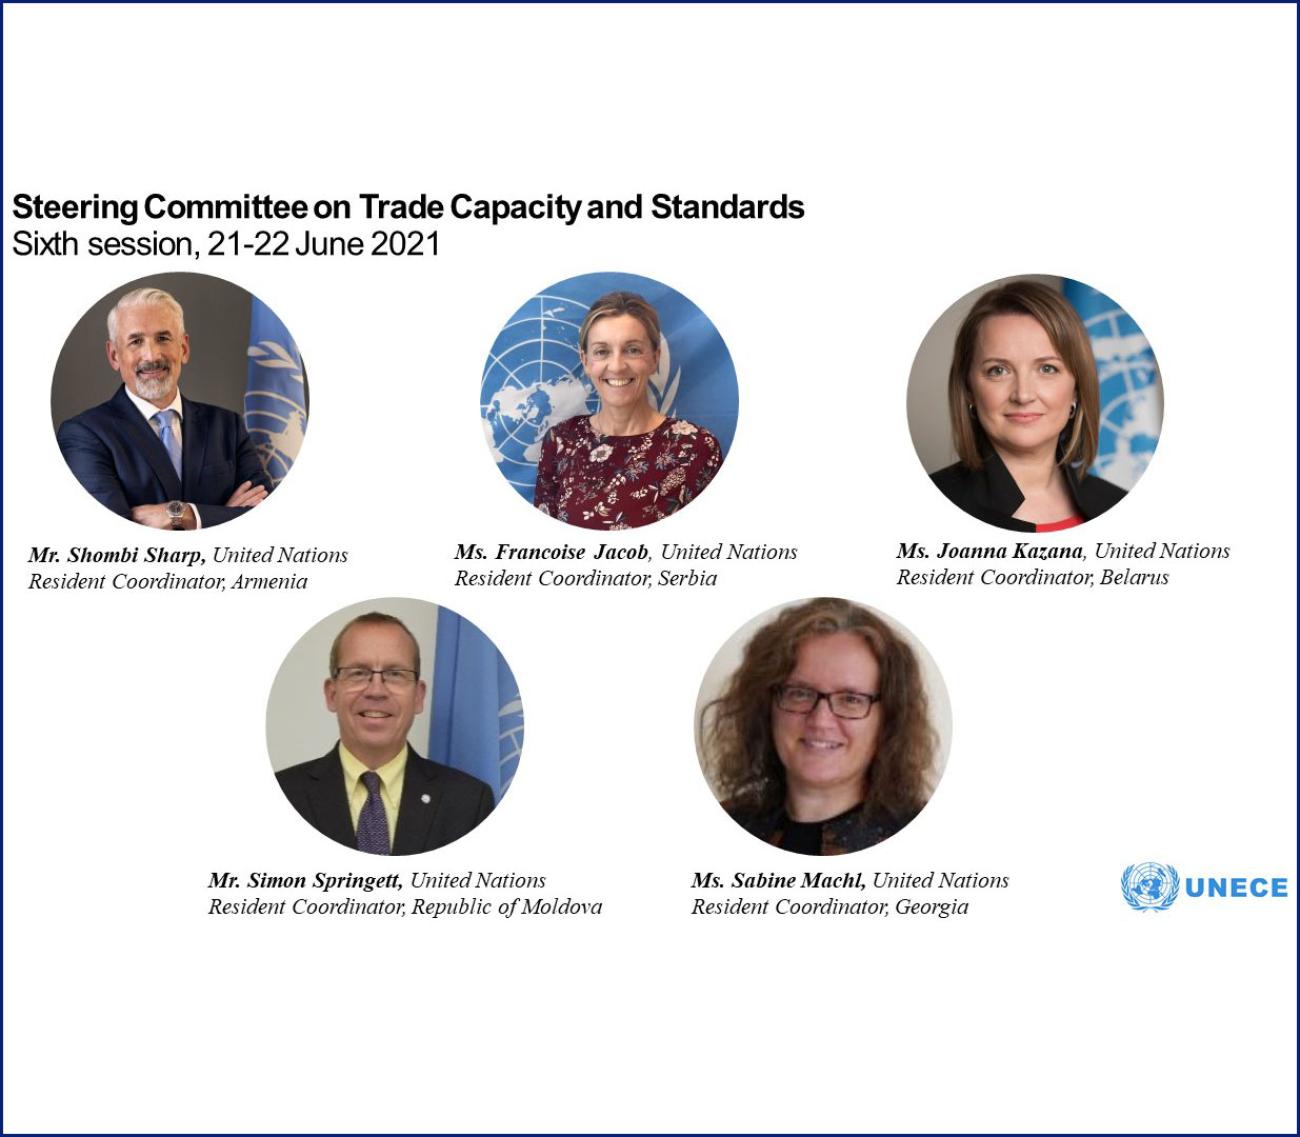 Постоянные координаторы ООН, участники шестой сессии Руководящего комитета ЕЭК ООН по потенциалу и стандартам торговли